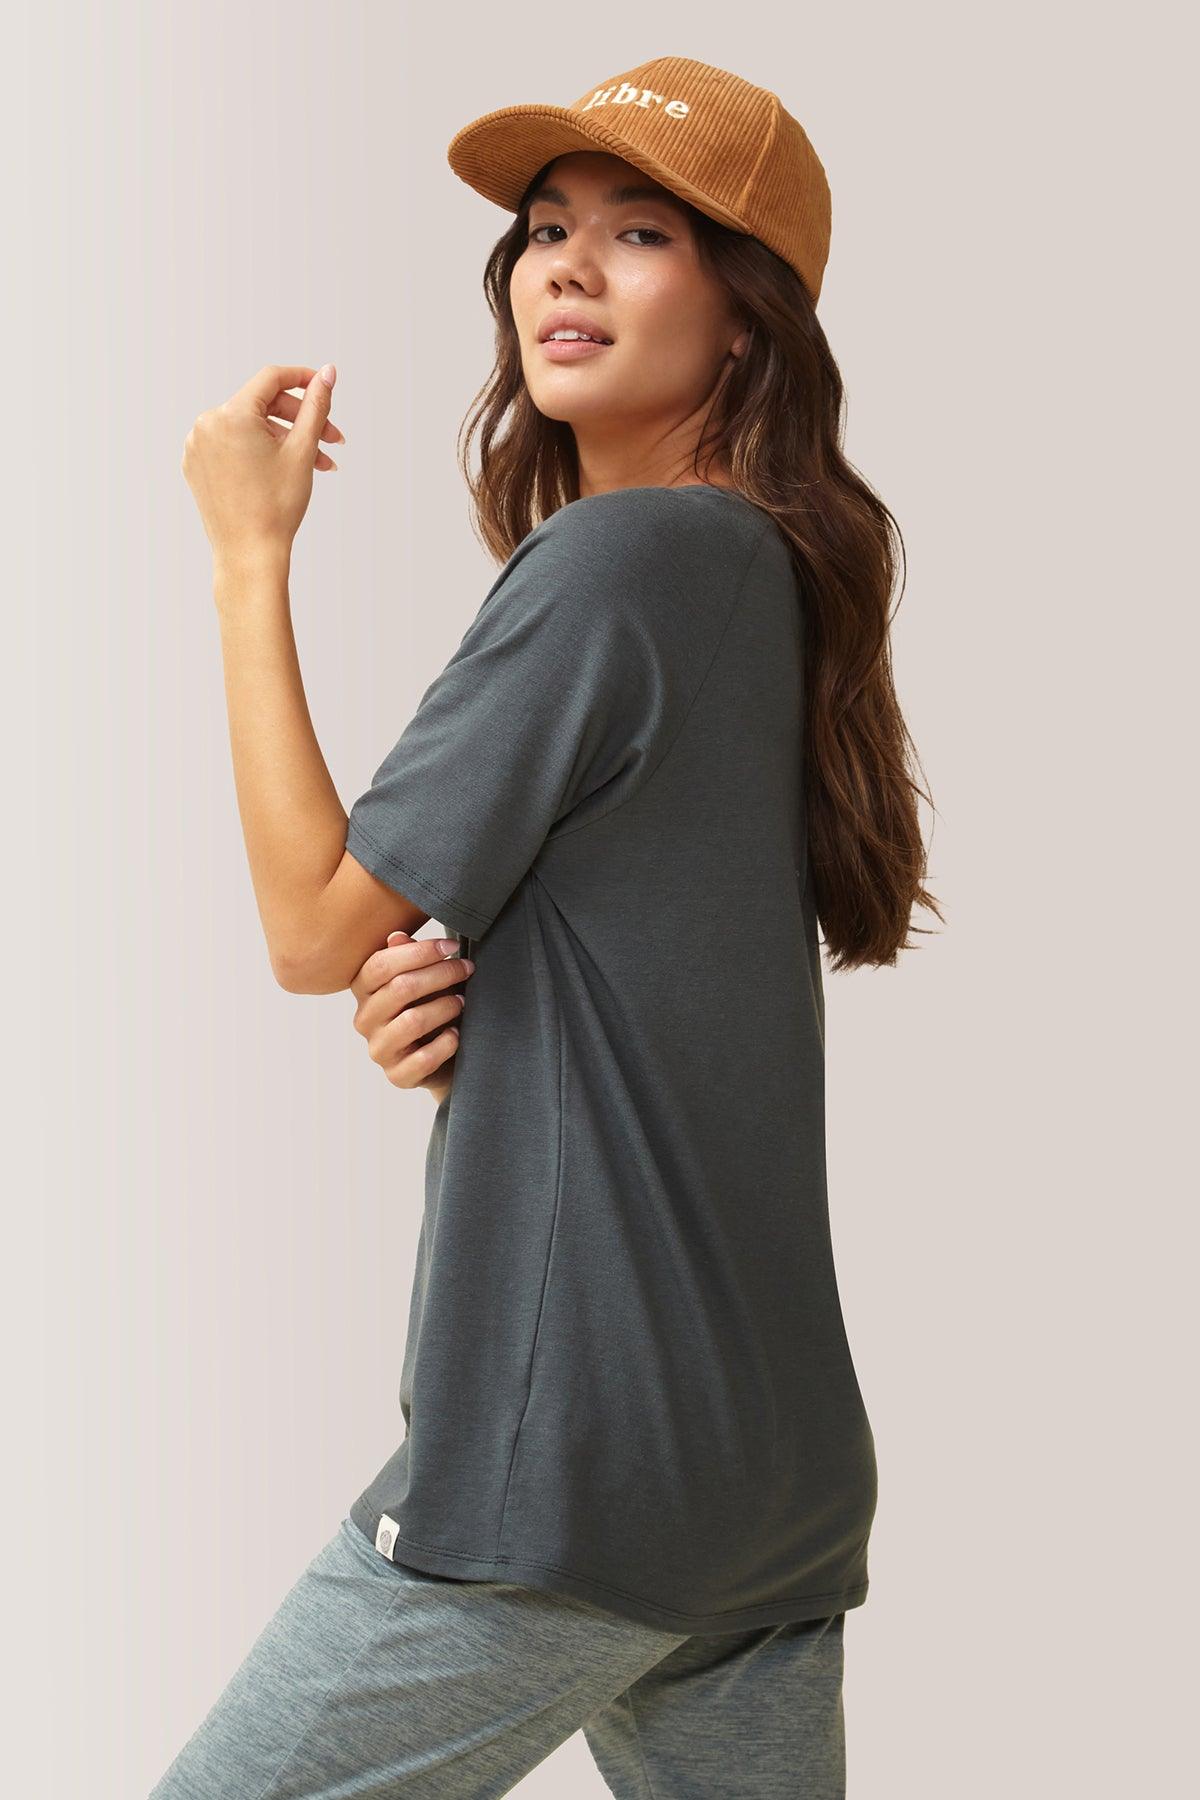 Femme vêtue du t-shirt blissful flow par Rose Boreal. / Women wearing the blissful flow t-shirt by Rose Boreal. - Cypress